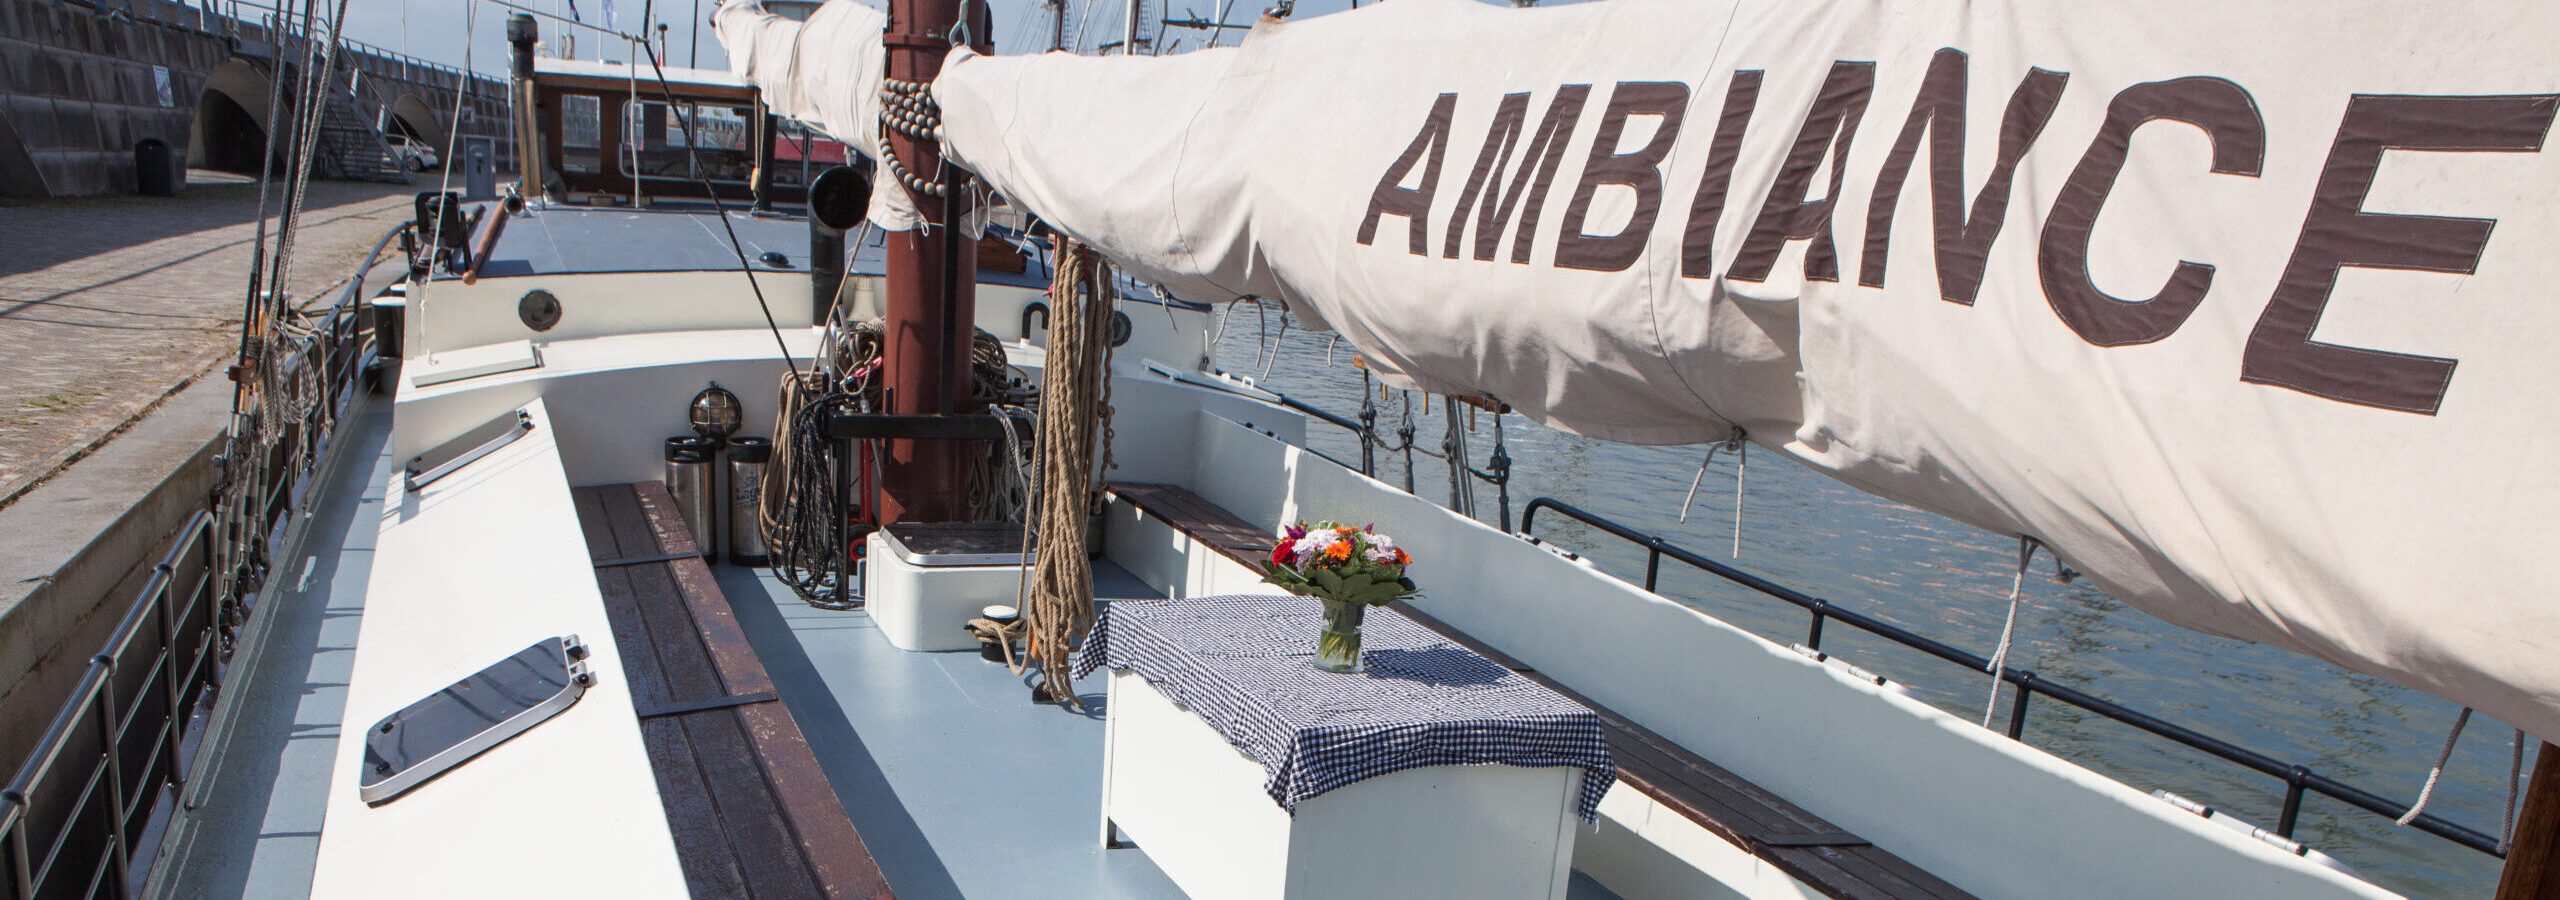 Ambiance - im Mittelschiff kann es sich gut gehen lassen